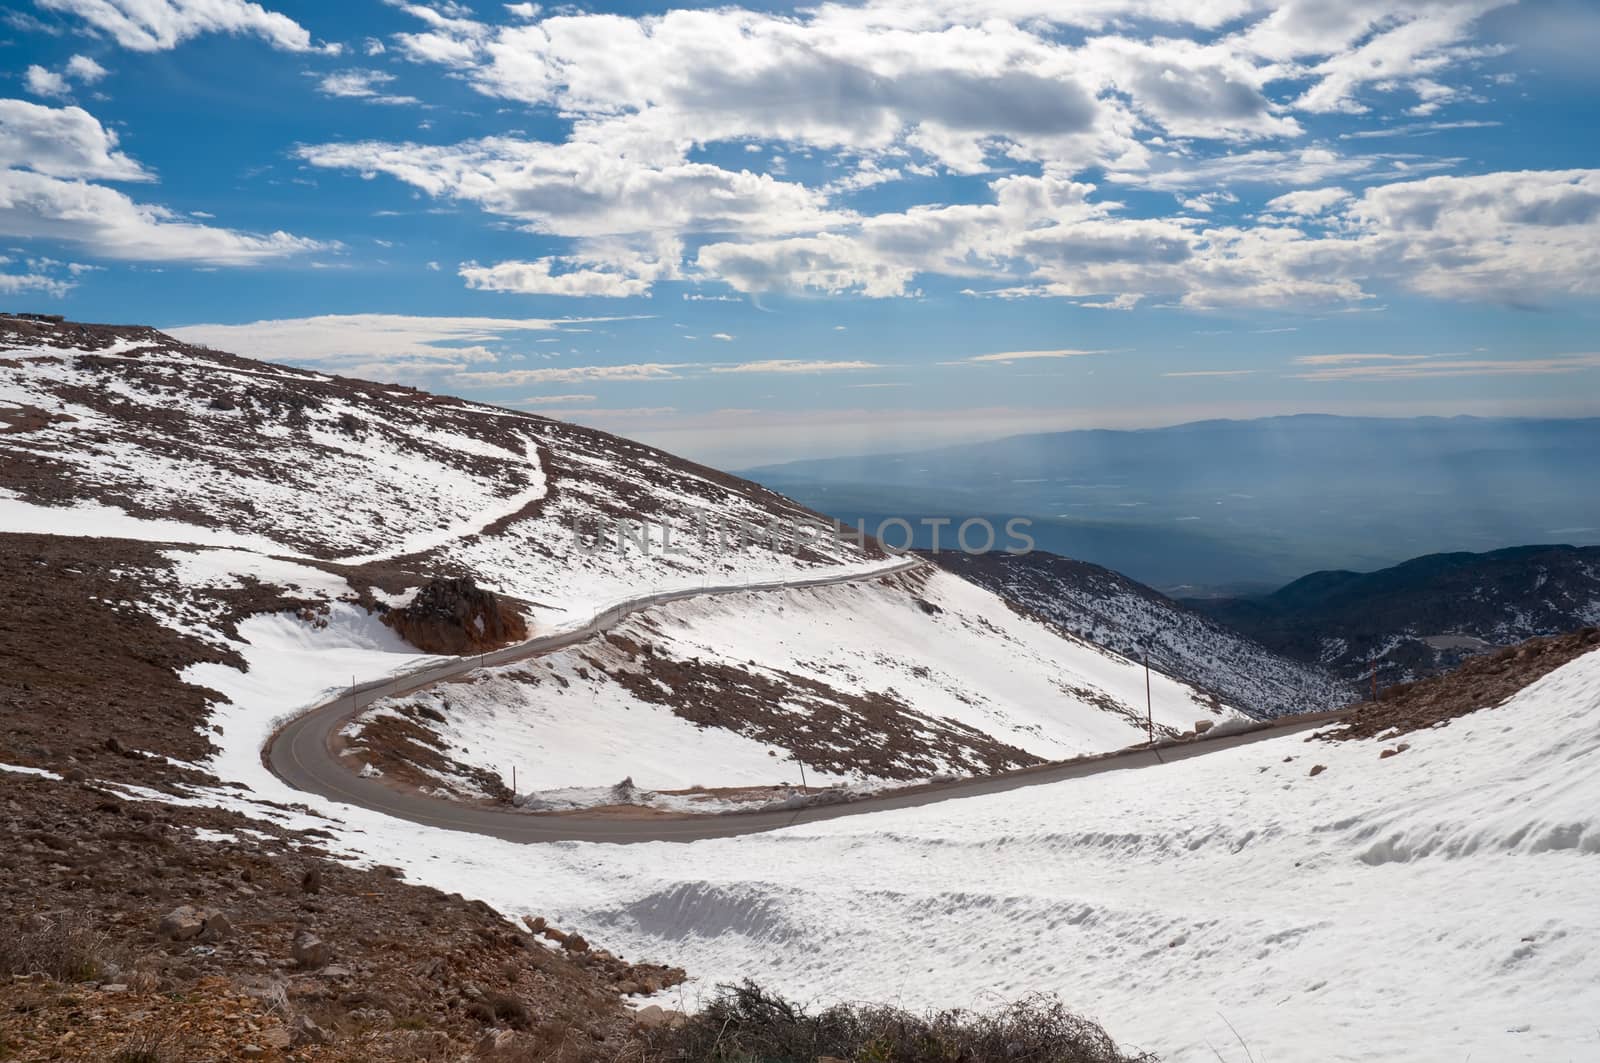 Mountain road in winter. Israel.